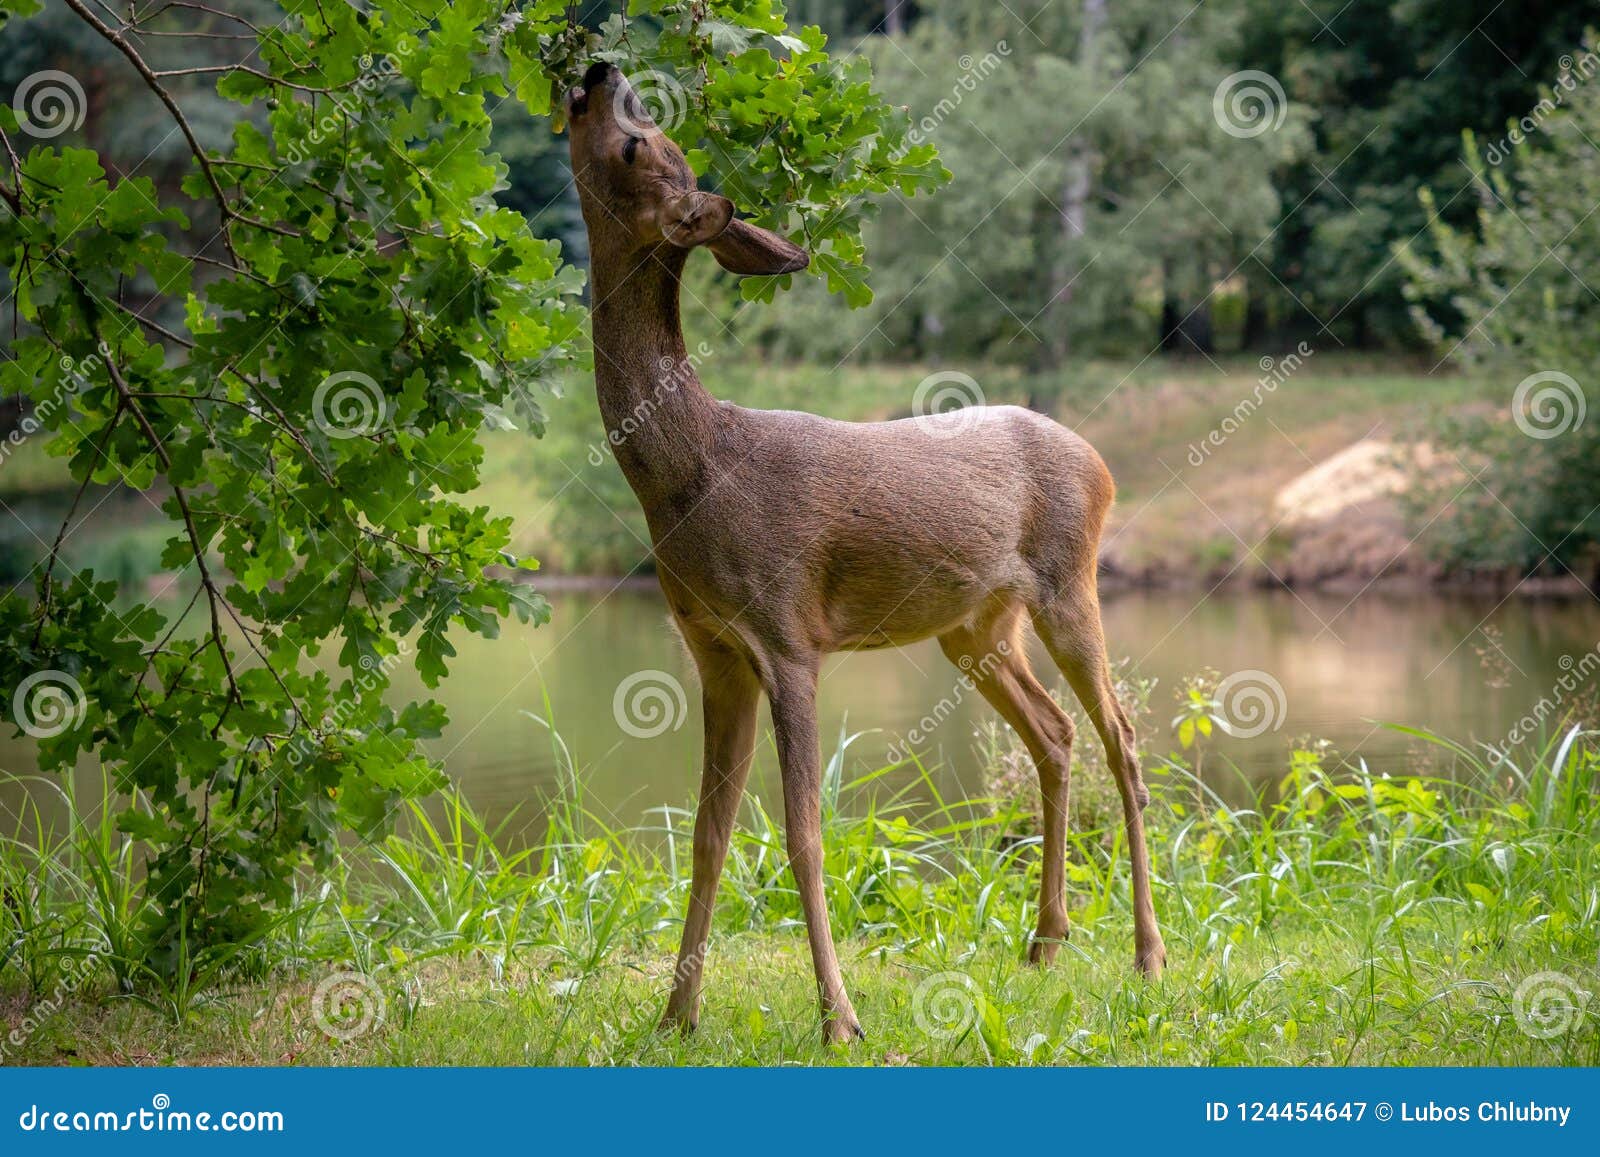 roe deer eating acorns from the tree, capreolus capreolus.